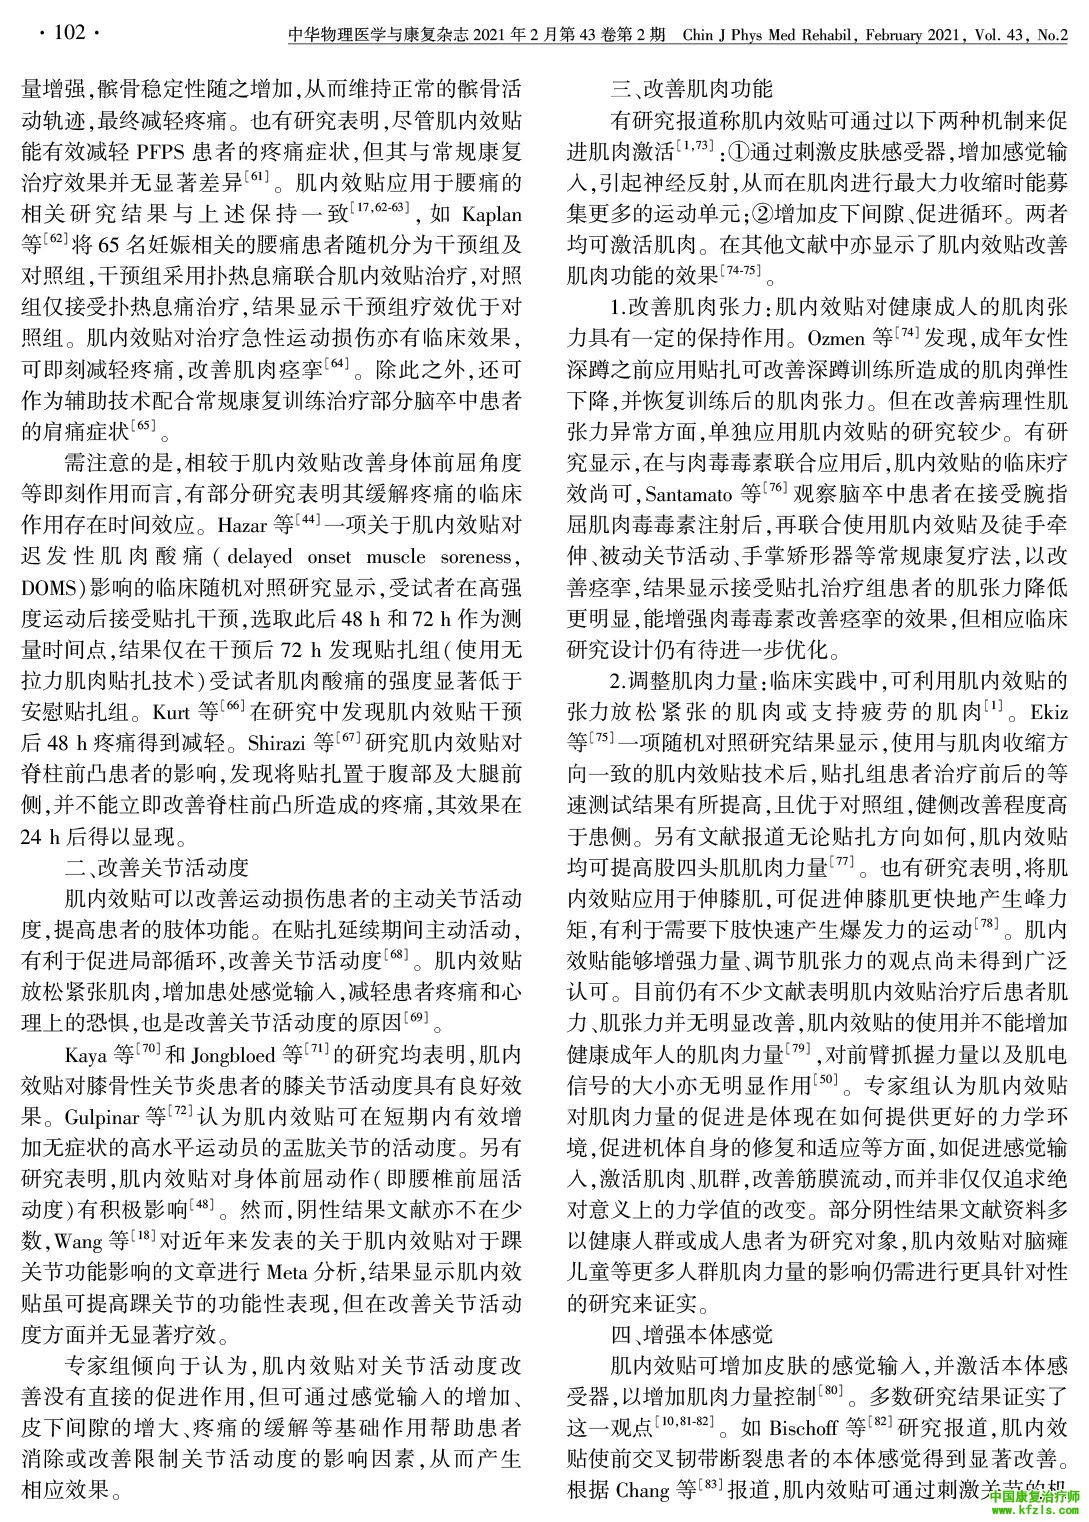 中国肌内效贴技术临床应用专家共识（2020版）